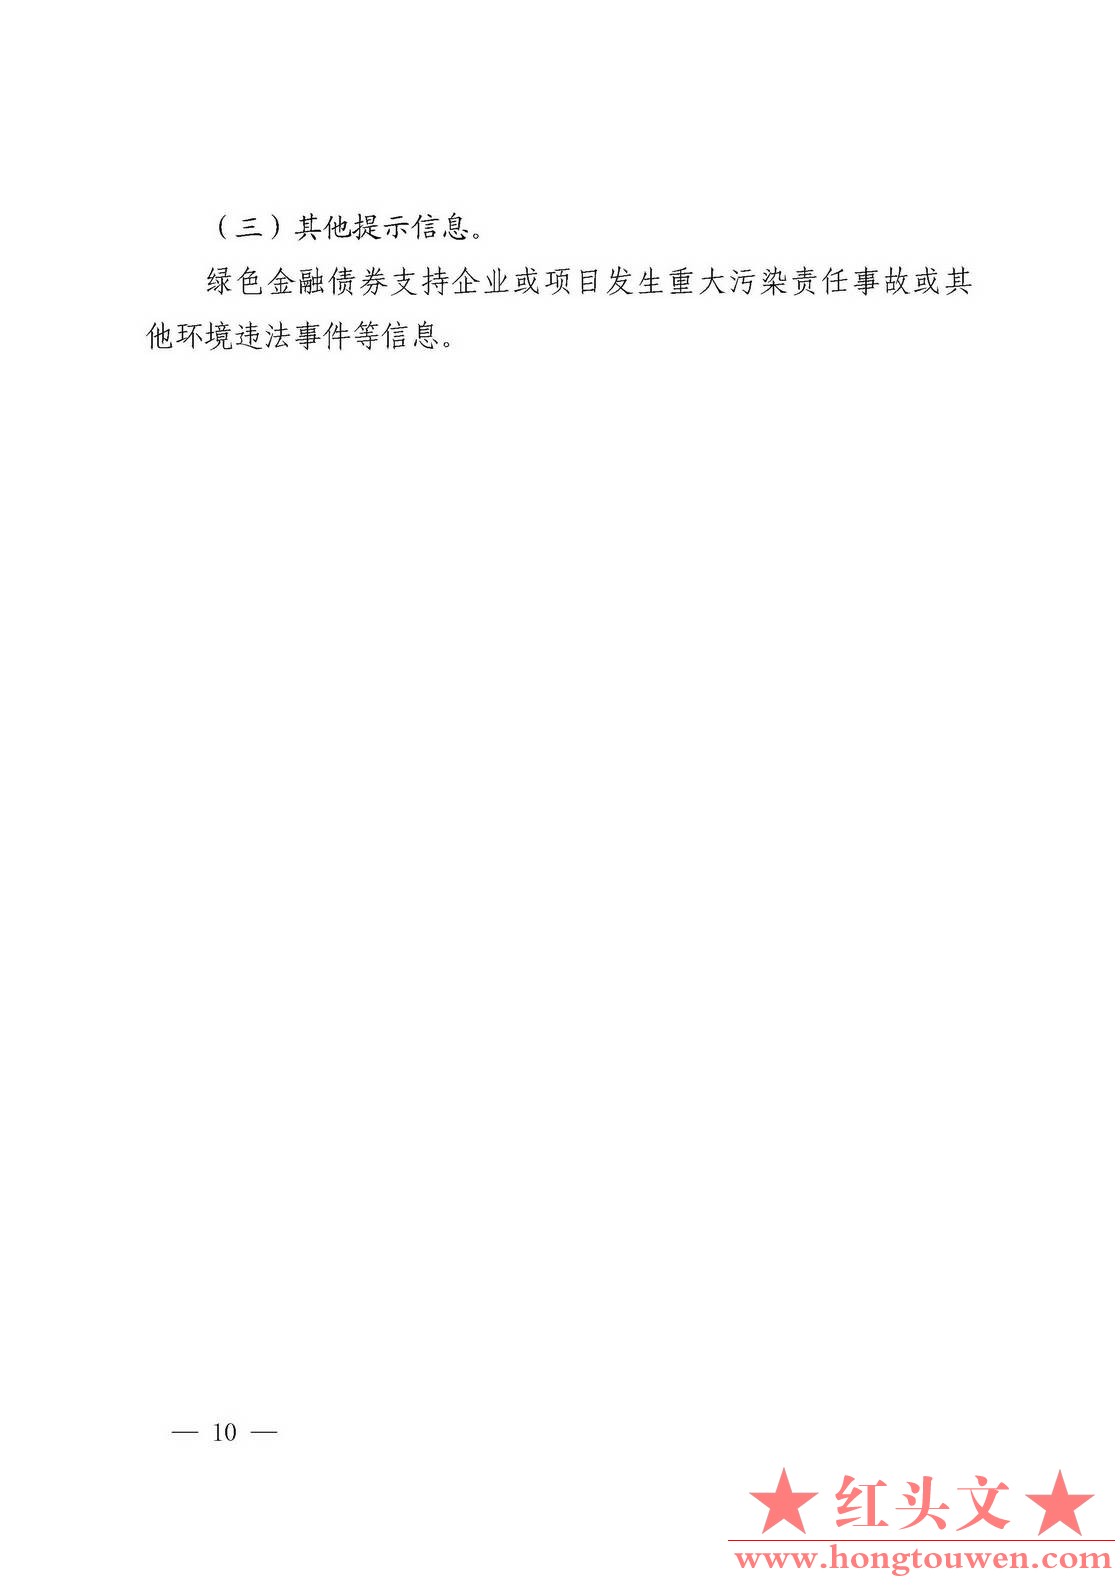 银发[2018]29号-中国人民银行关于加强绿色金融在全存续监督管理有关事宜的通知_页面_1.jpg